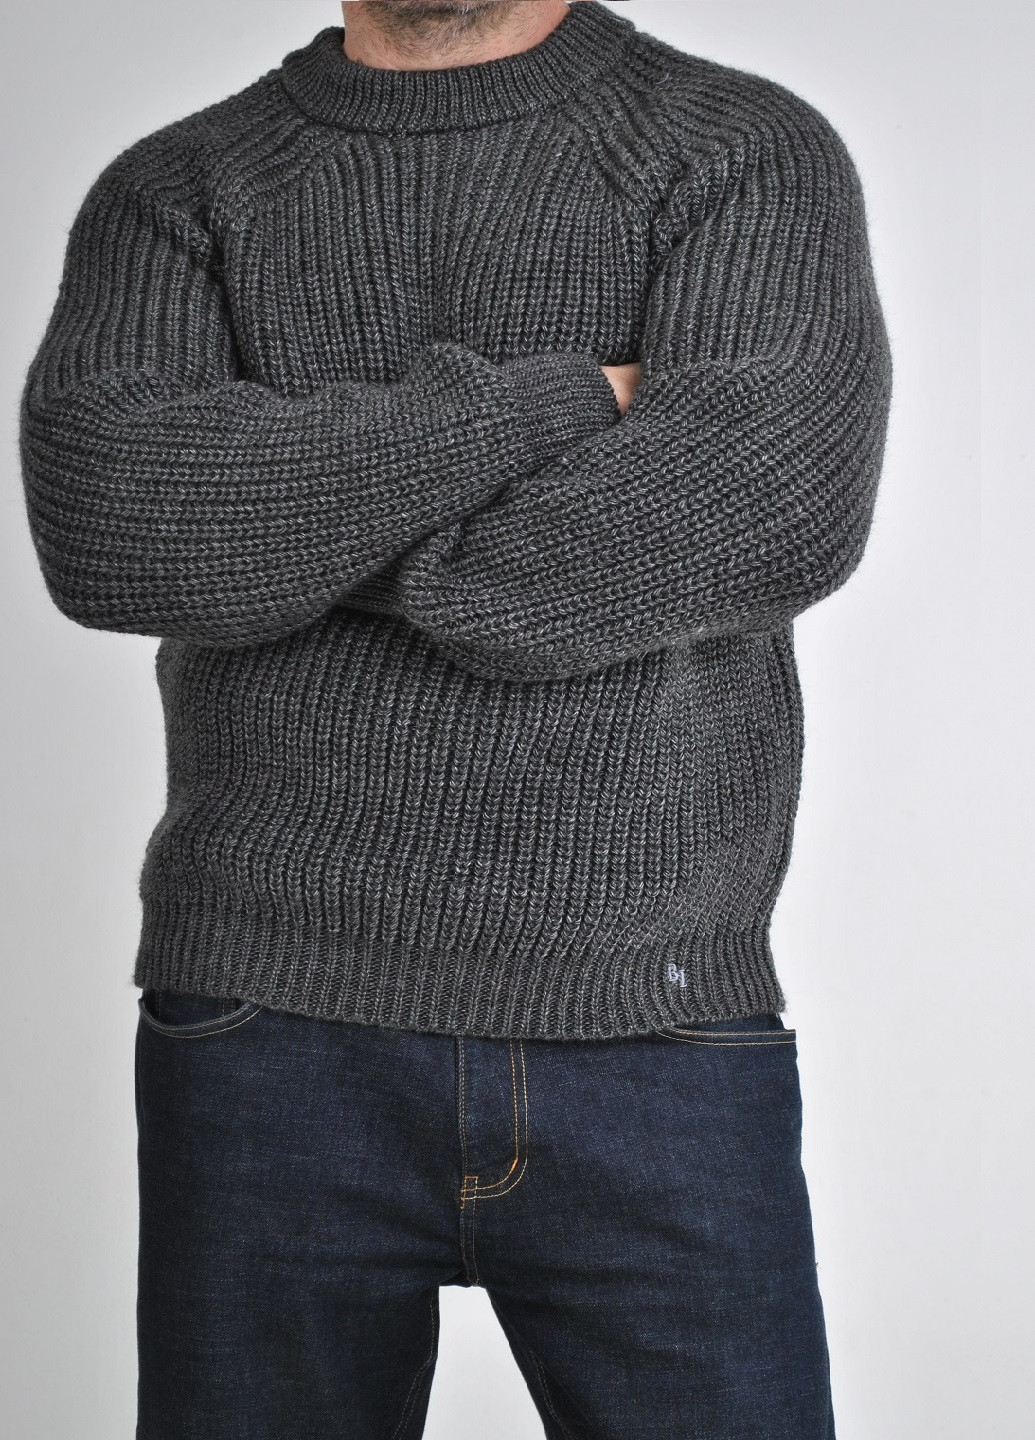 Графитовый зимний свитер крупной вязки Berta Lucci